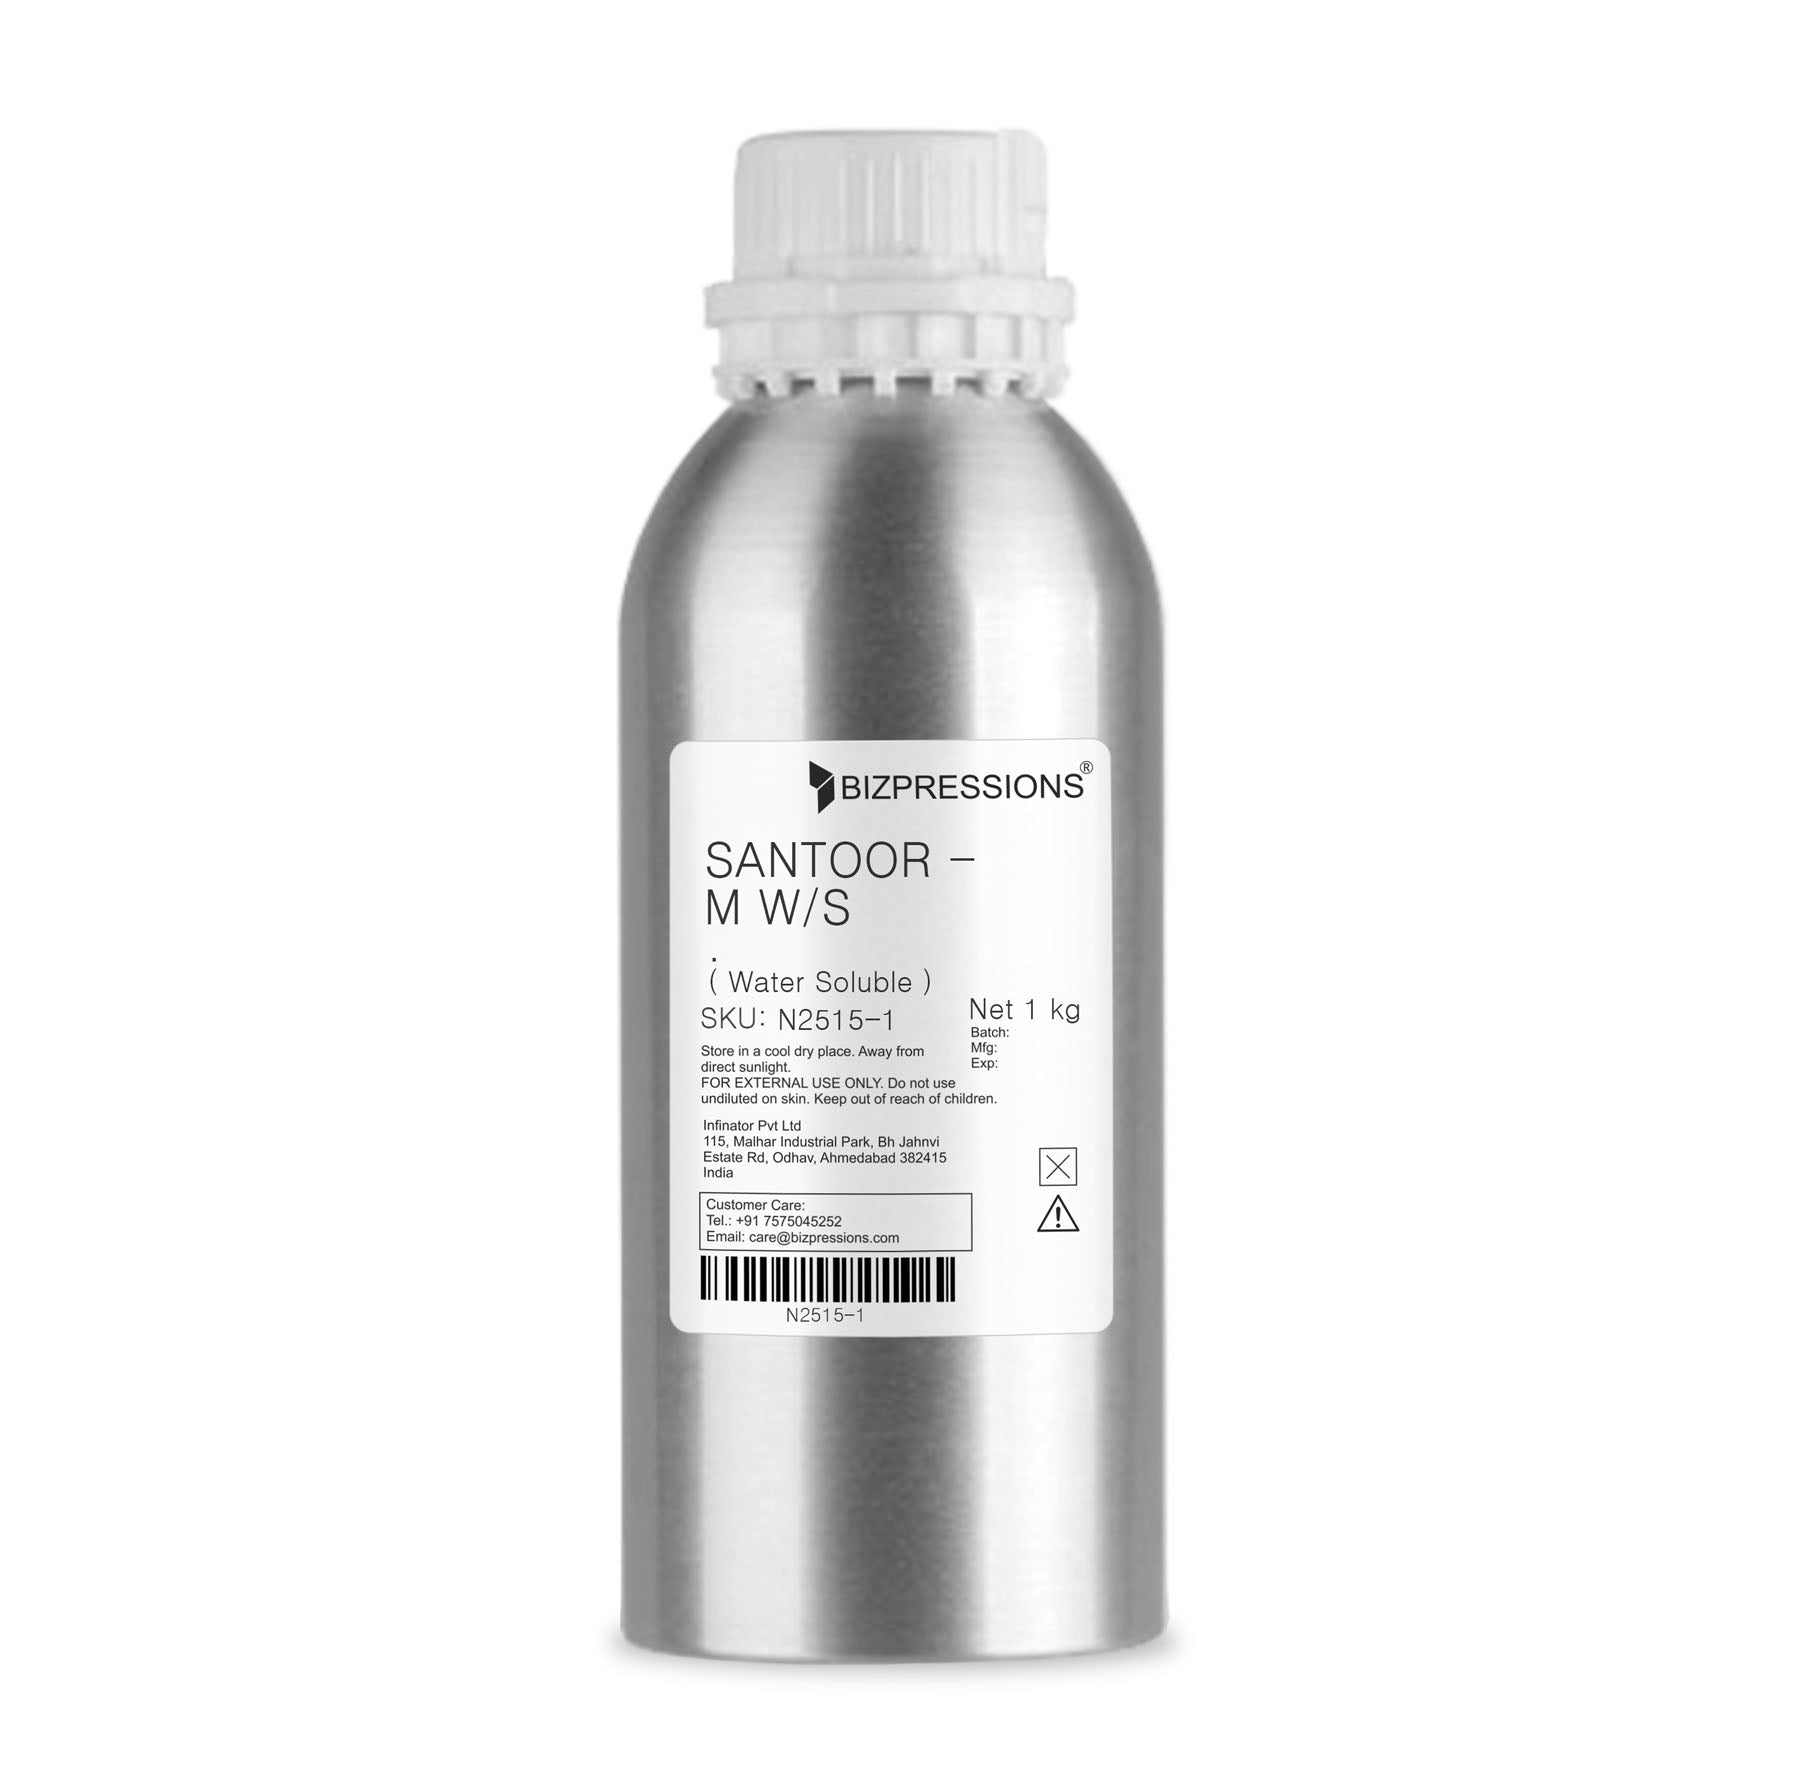 SANTOOR - M W/S - Fragrance ( Water Soluble ) - 1 kg